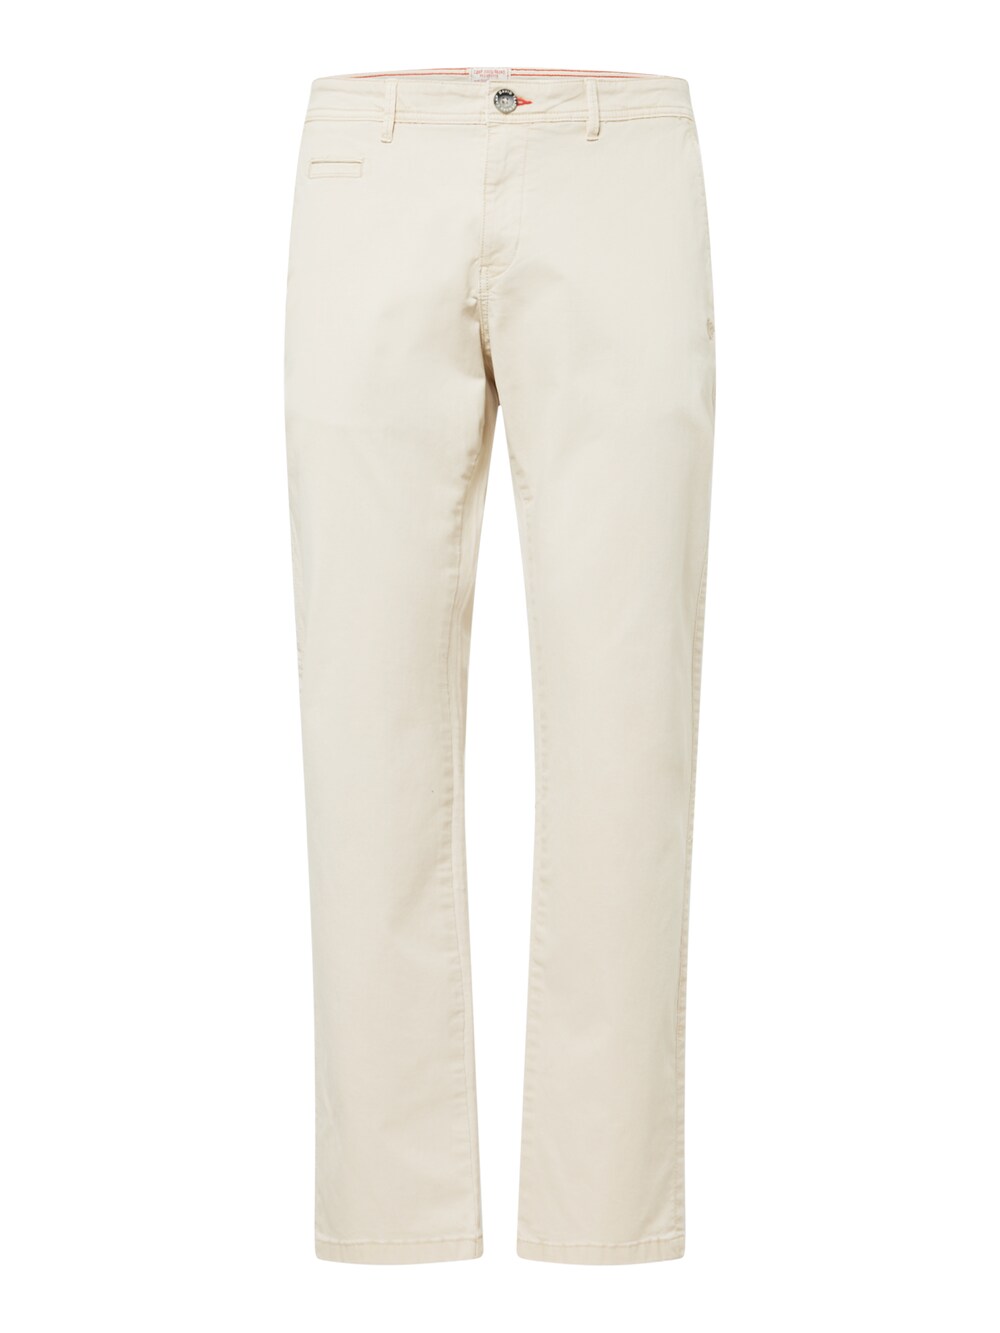 Обычные брюки чинос CAMP DAVID, шерсть белая обычные брюки карго camp david серо коричневый